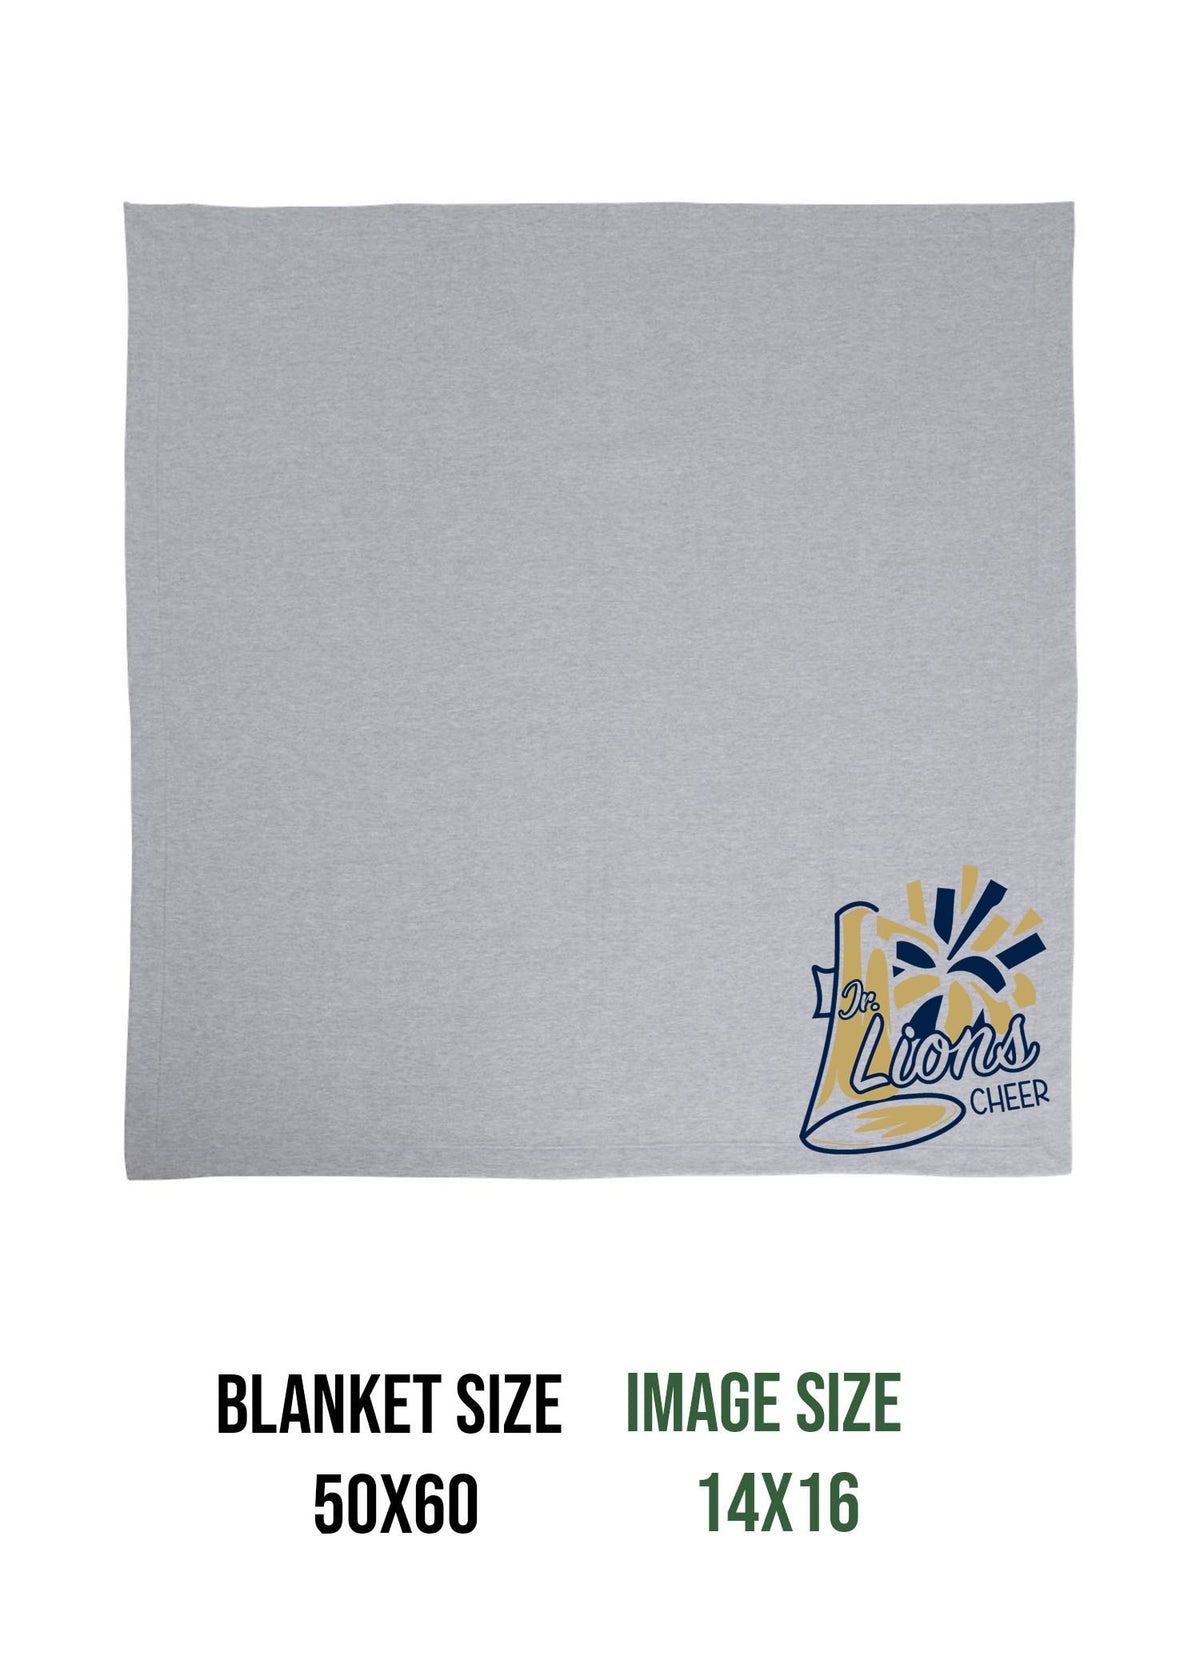 Lions Cheer Design 2 Blanket